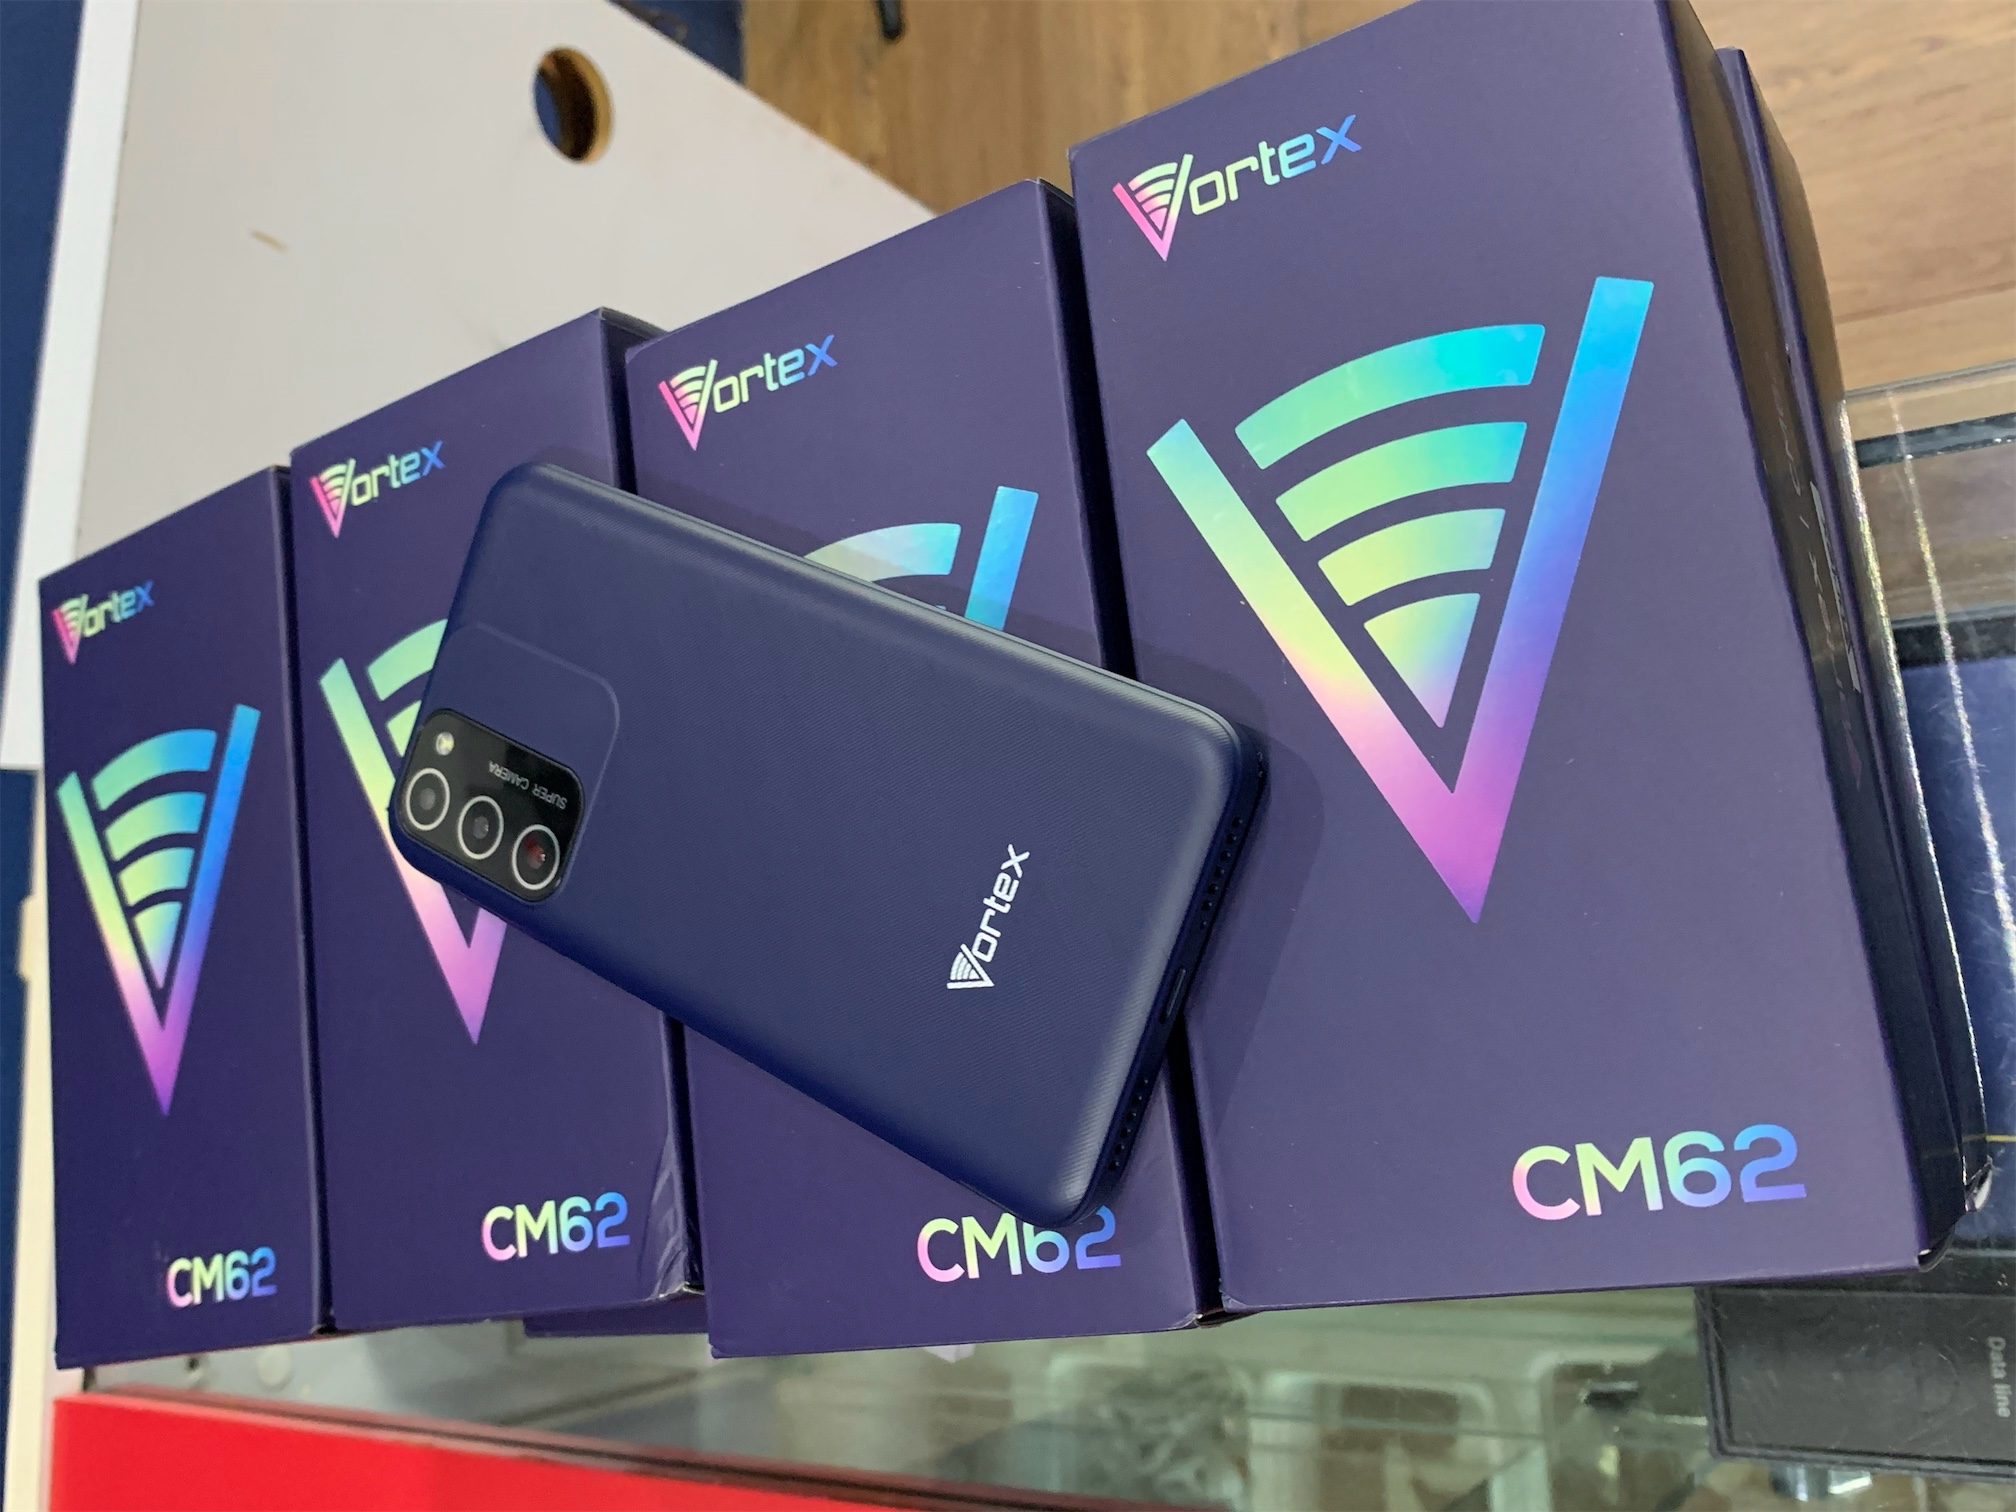 celulares y tabletas - VORTEX CM62 0